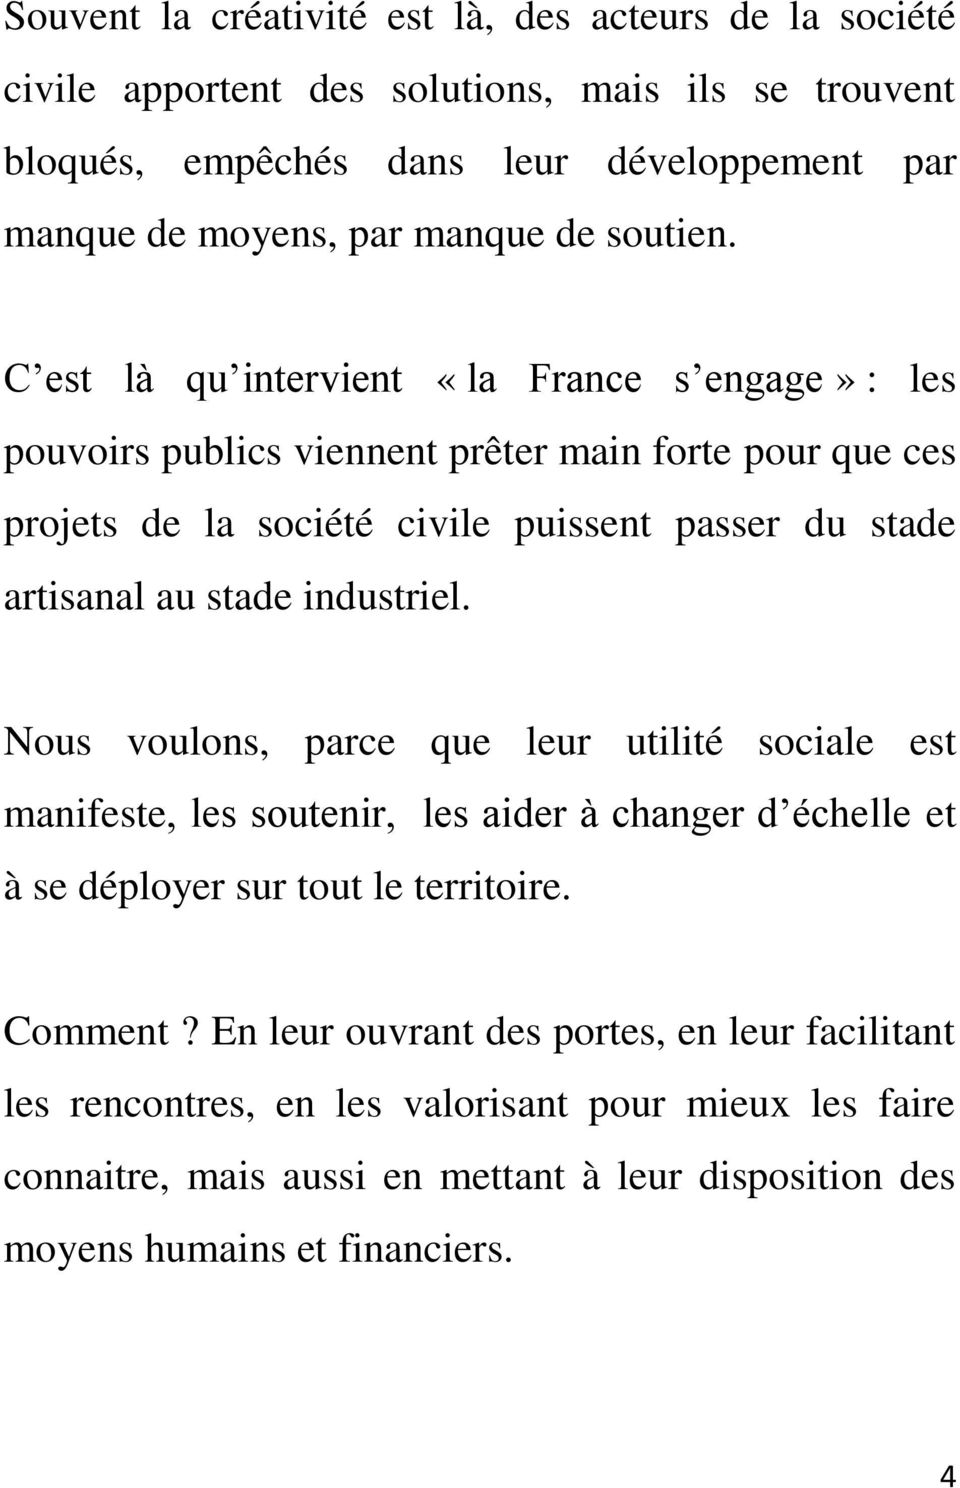 C est là qu intervient «la France s engage» : les pouvoirs publics viennent prêter main forte pour que ces projets de la société civile puissent passer du stade artisanal au stade